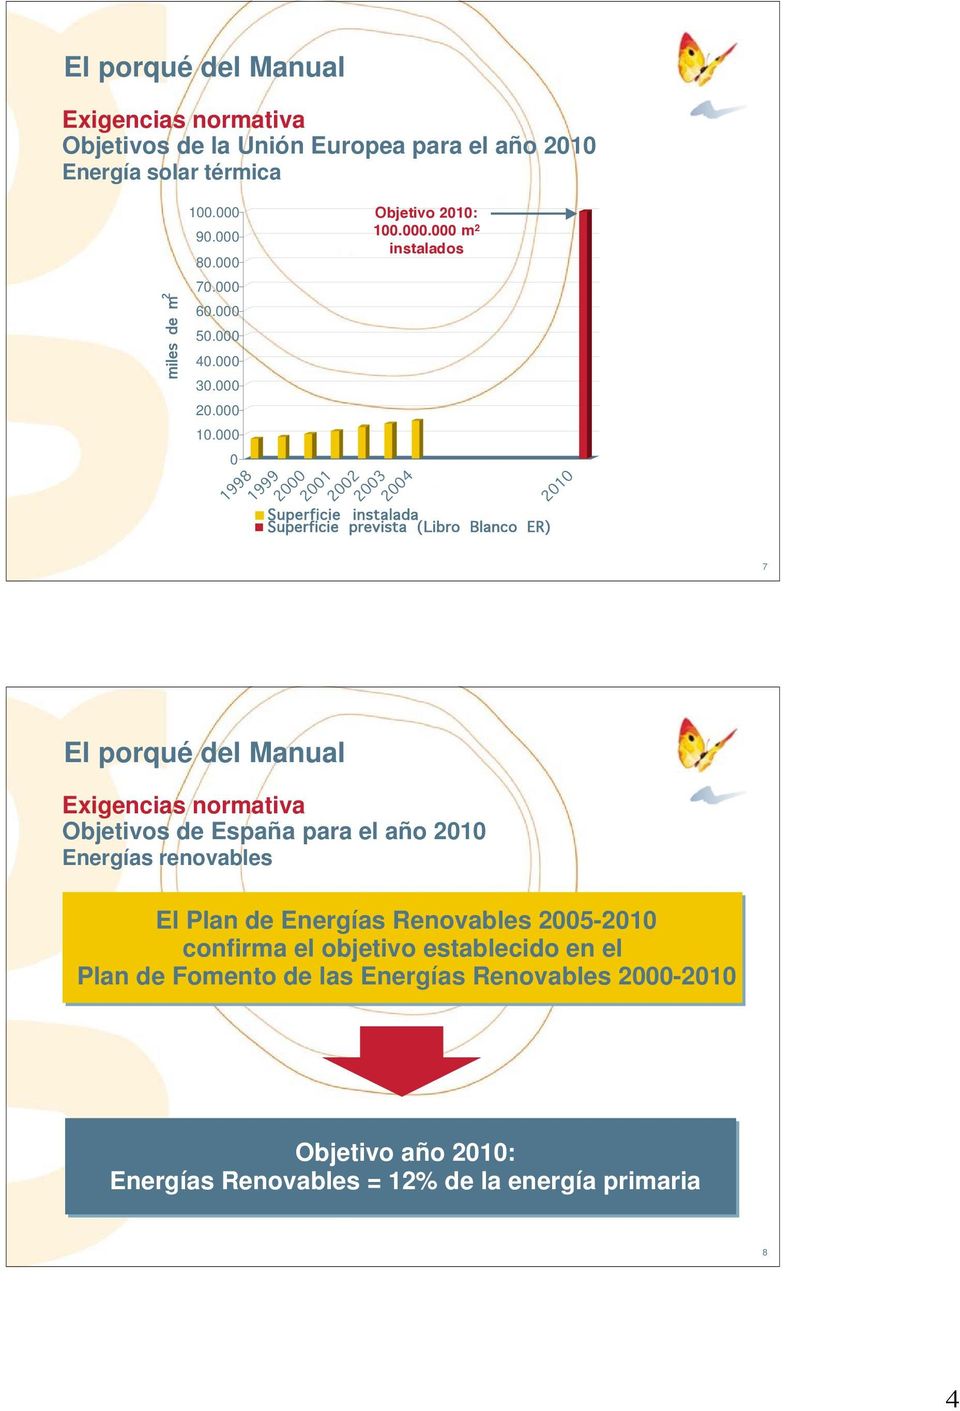 (Libro Blanco ER) 2010 7 El porqué del Manual Exigencias normativa Objetivos de España para el año 2010 Energías renovables El Plan de Energías Renovables